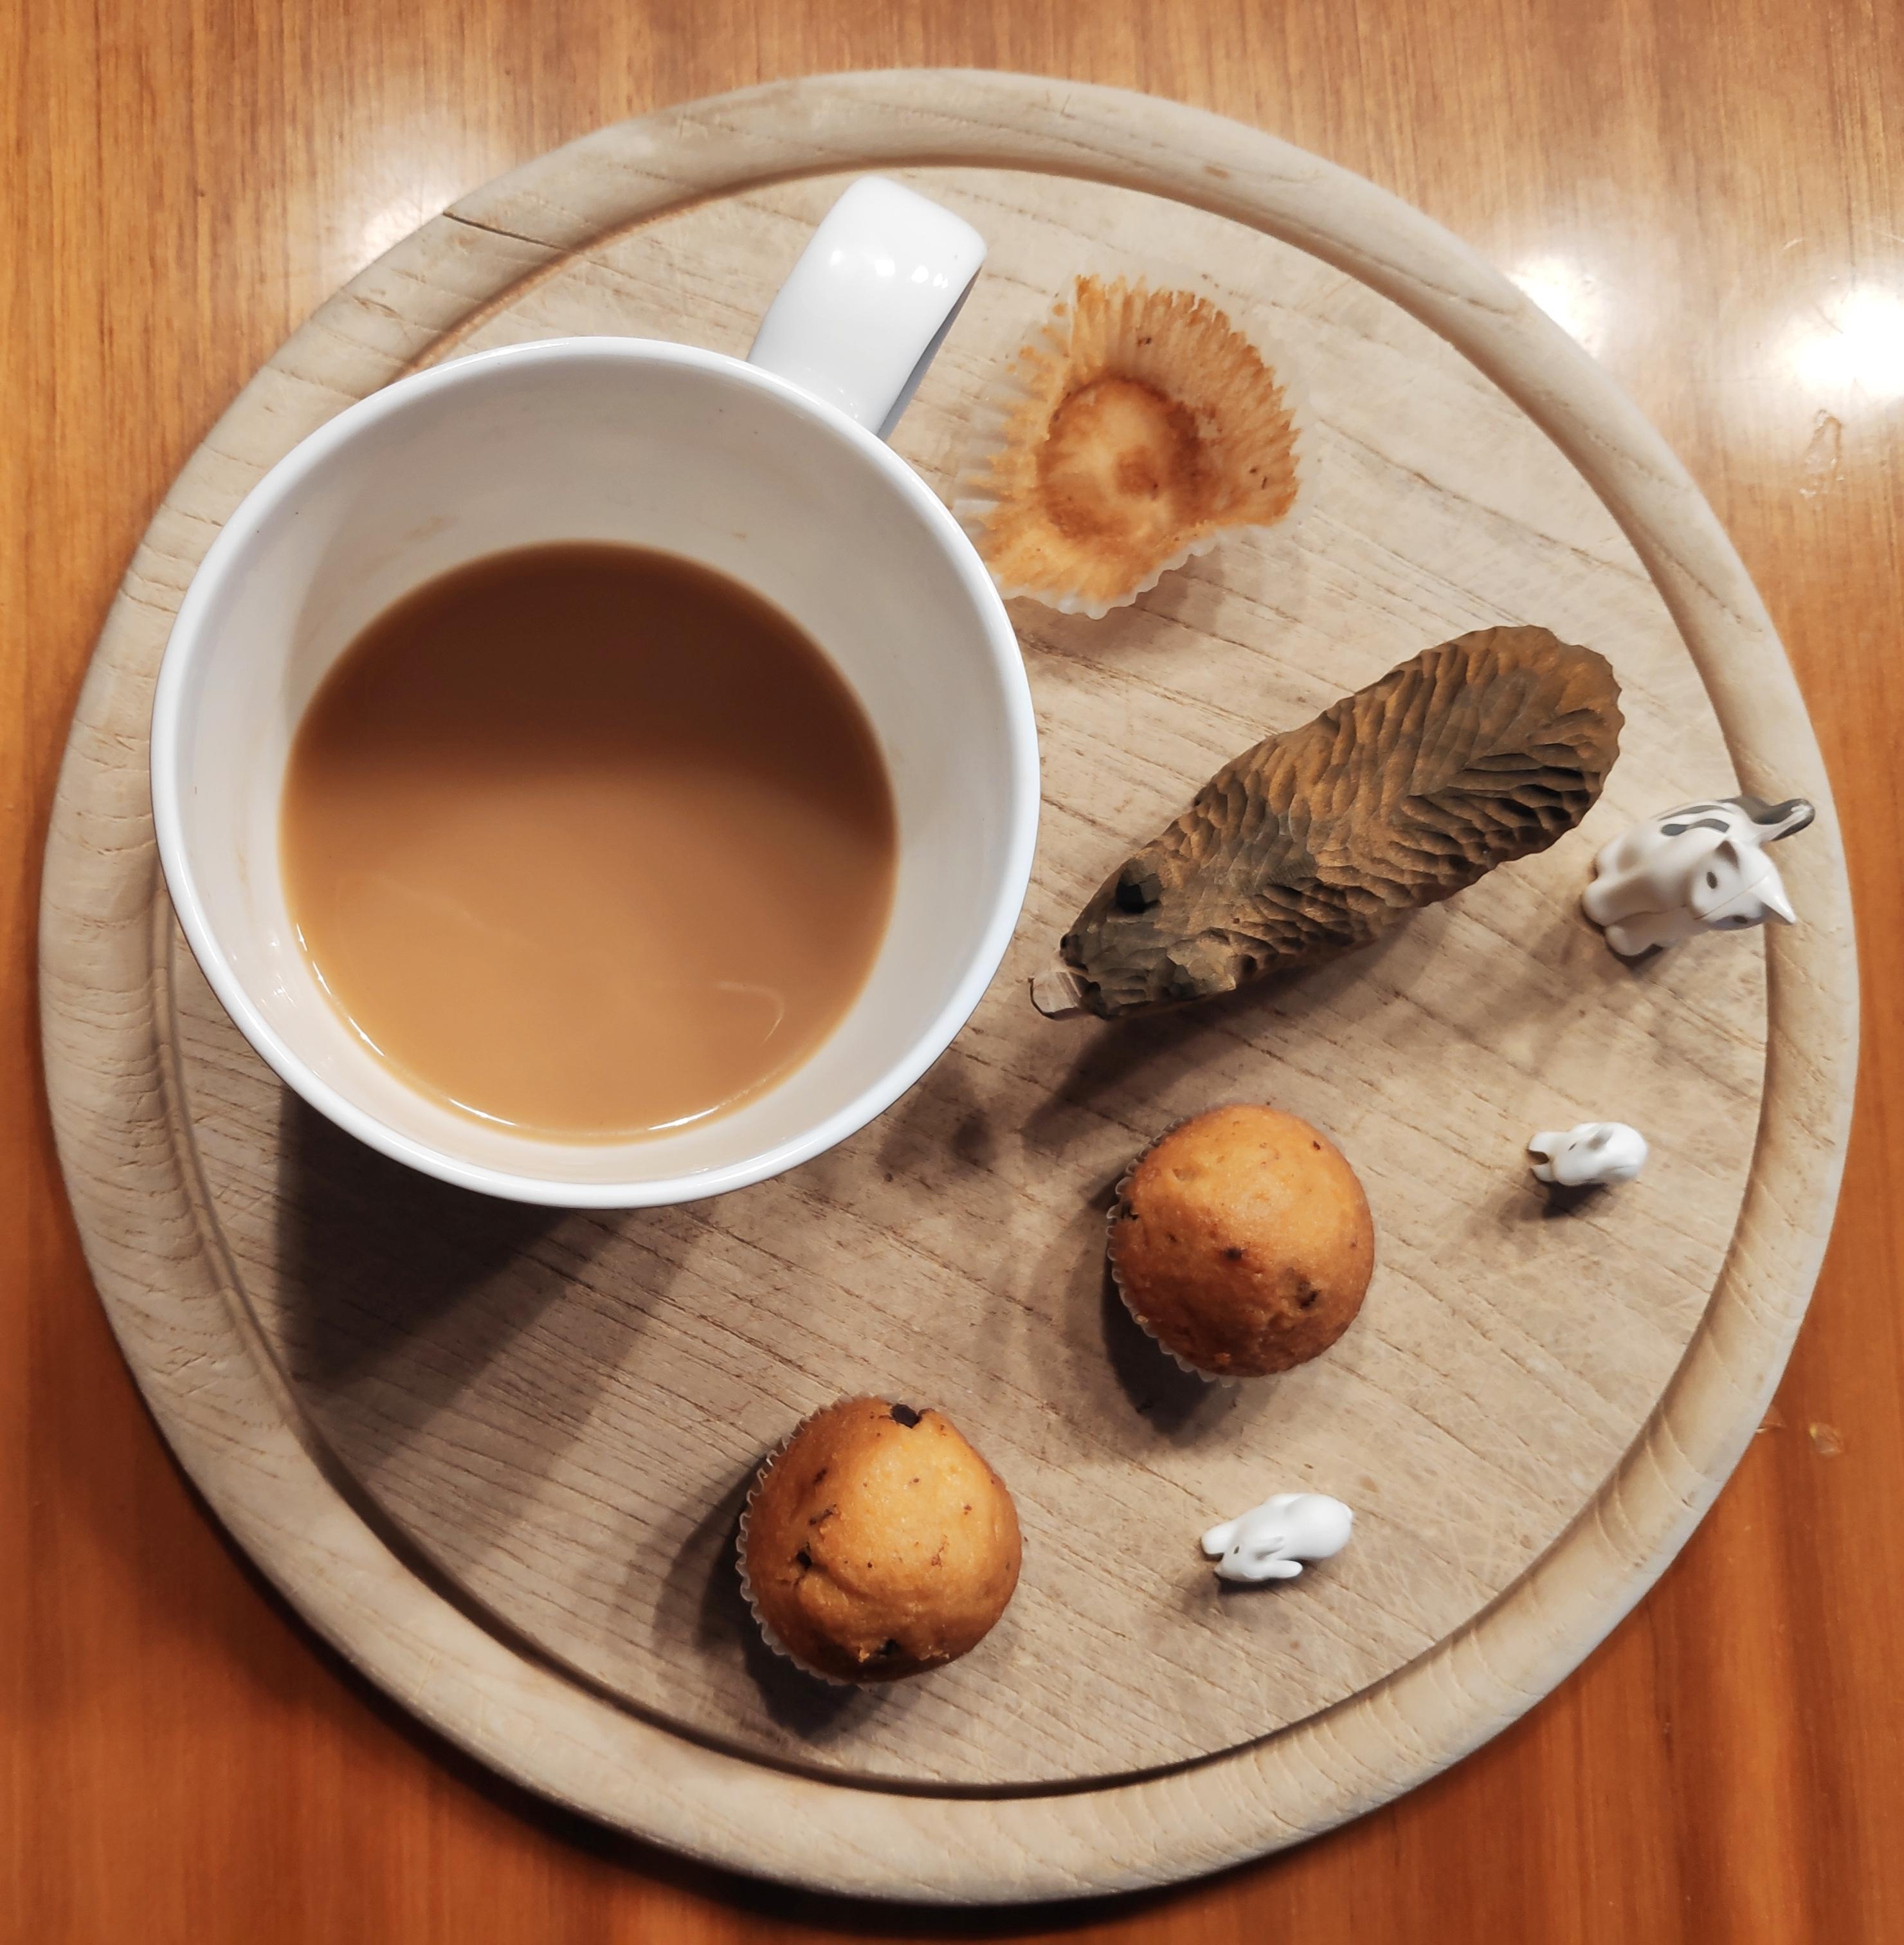 .Momentaufnahme.
#Kaffee #Holzfigur #Muffins #Momentaufnahme #Schönedinge #Playmobile #Tischdekoration